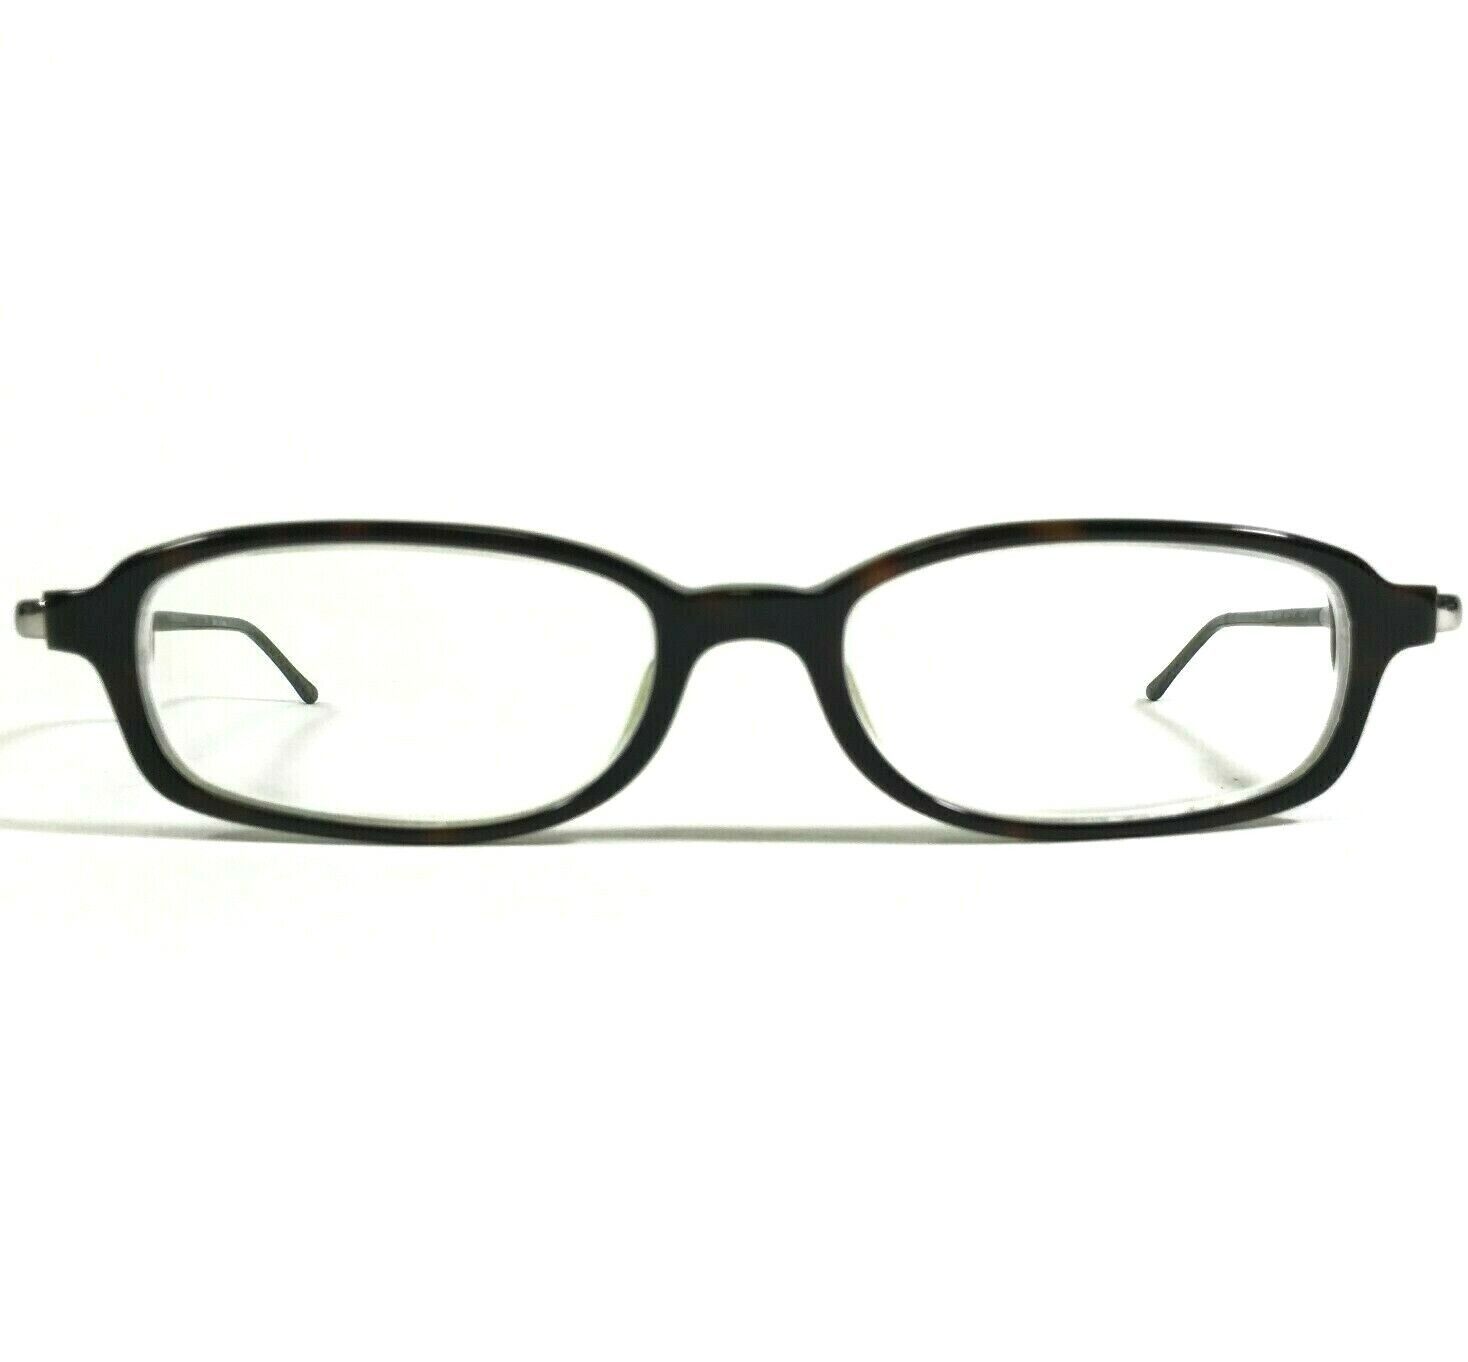 Polo Ralph Lauren POLO 2002 5016 Eyeglasses Frames Green Tortoise 49-16-135 - $46.54